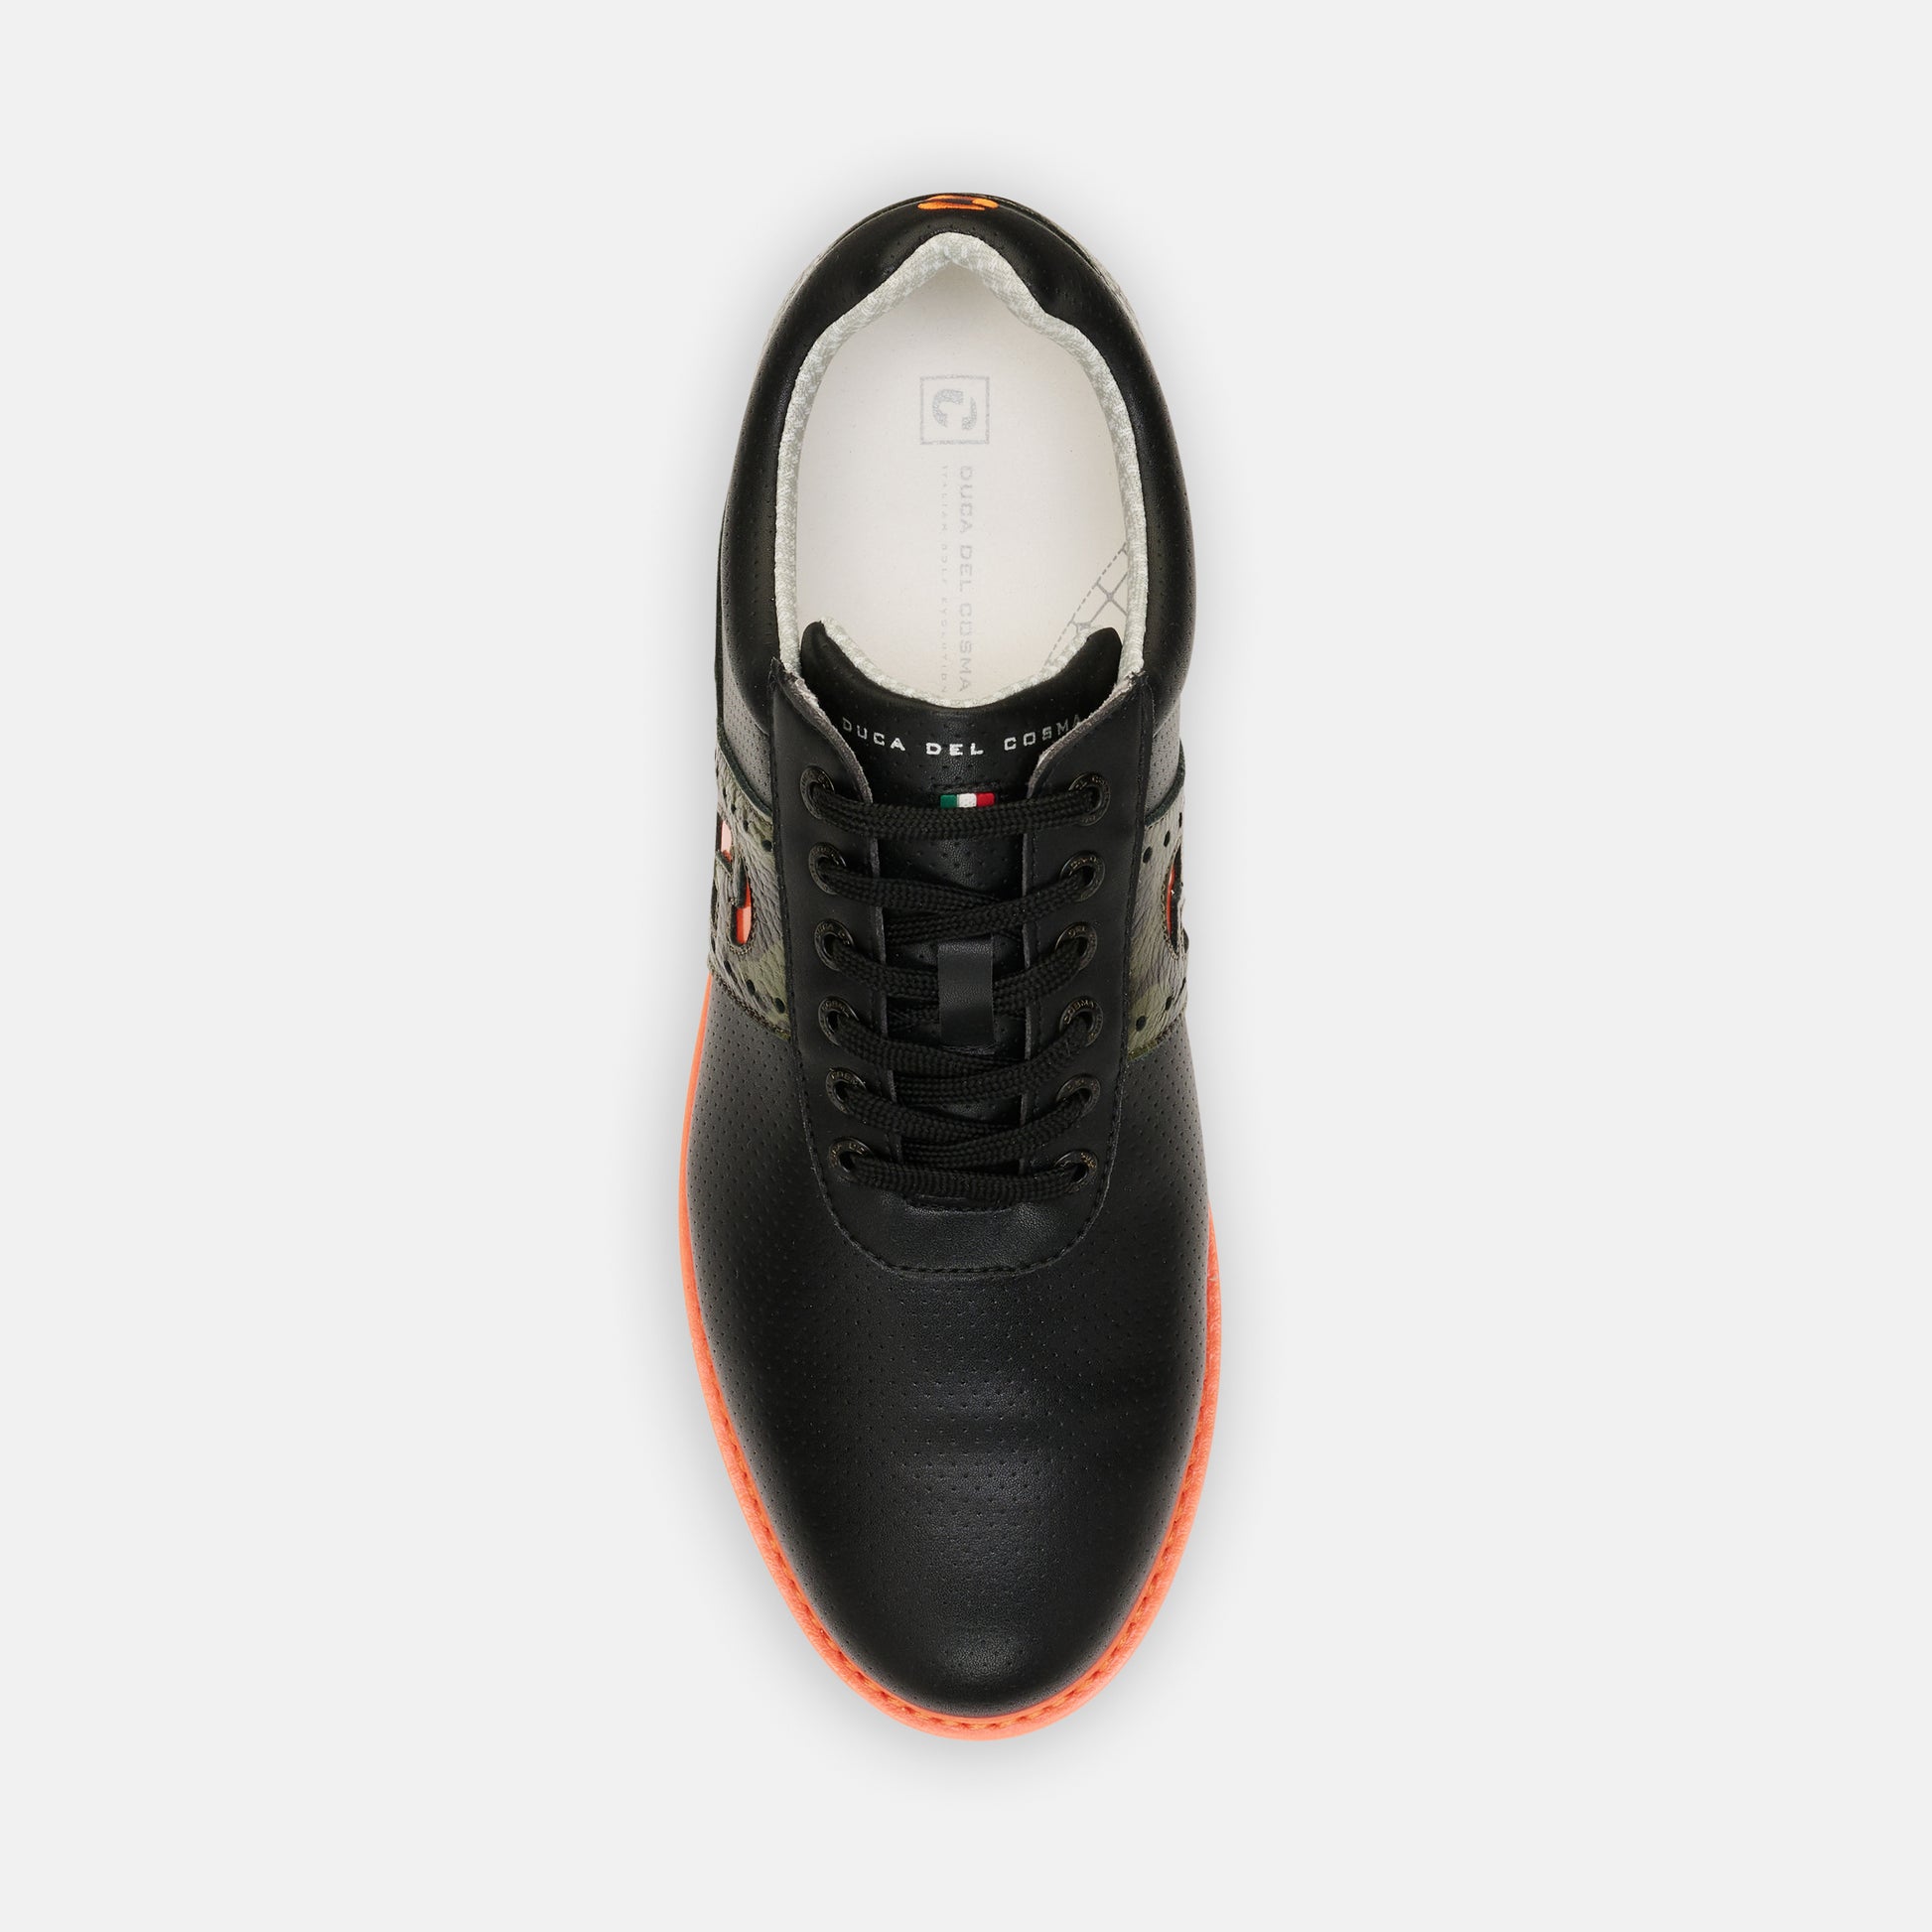 spikeless golf shoes men